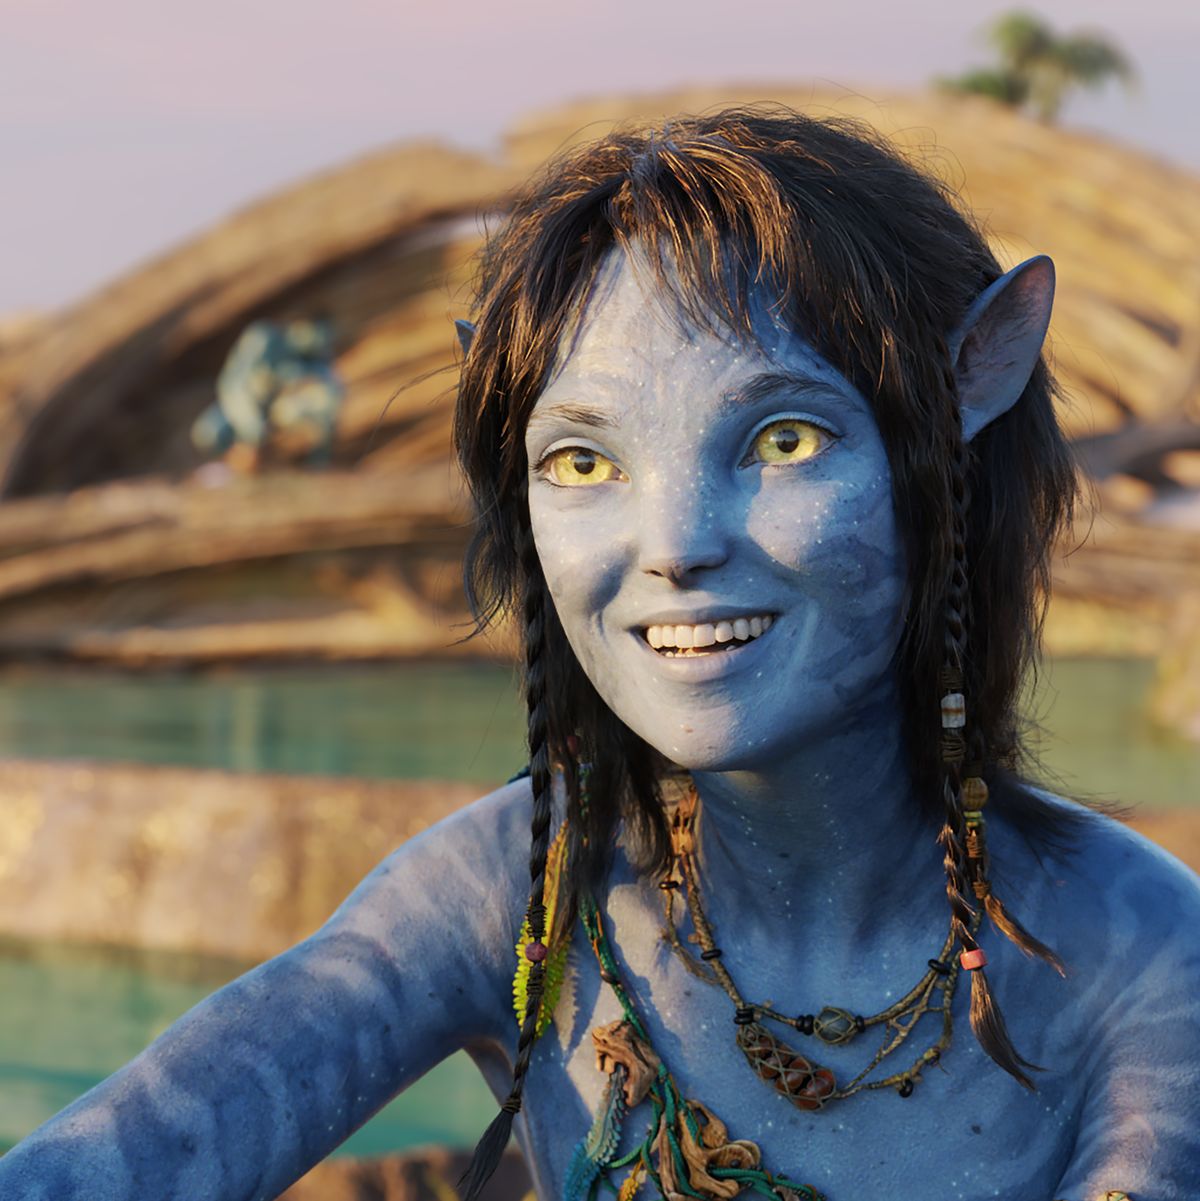 Avatar 2 - Kiri là bộ phim được mong đợi nhất năm 2024 sẽ đưa khán giả đến với một thế giới mới lạ, huyền bí và đầy ma mị. Hình ảnh chưa từng được tiết lộ của nhân vật Kiri khiến người xem như đang tham gia vào các trận chiến giữa những sinh vật hồi sinh trong đại dương sâu thẳm. Hãy đón xem và lạc vào những pha hành động hấp dẫn của bộ phim Avatar 2!